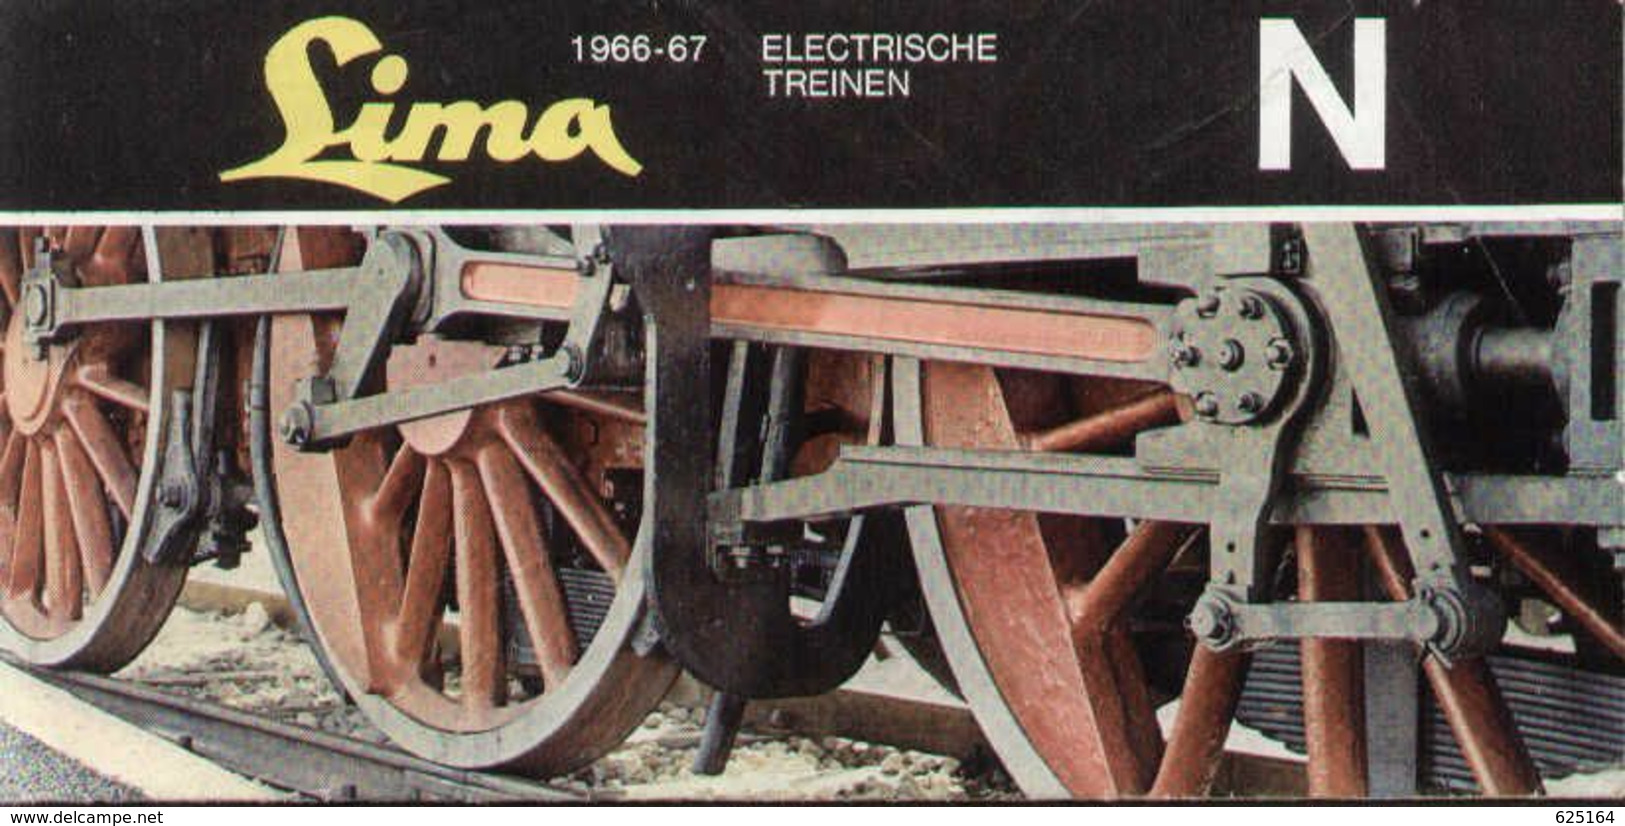 Catalogue LIMA 1966/67 Electrische Treinen N 1/160 - Nederlands